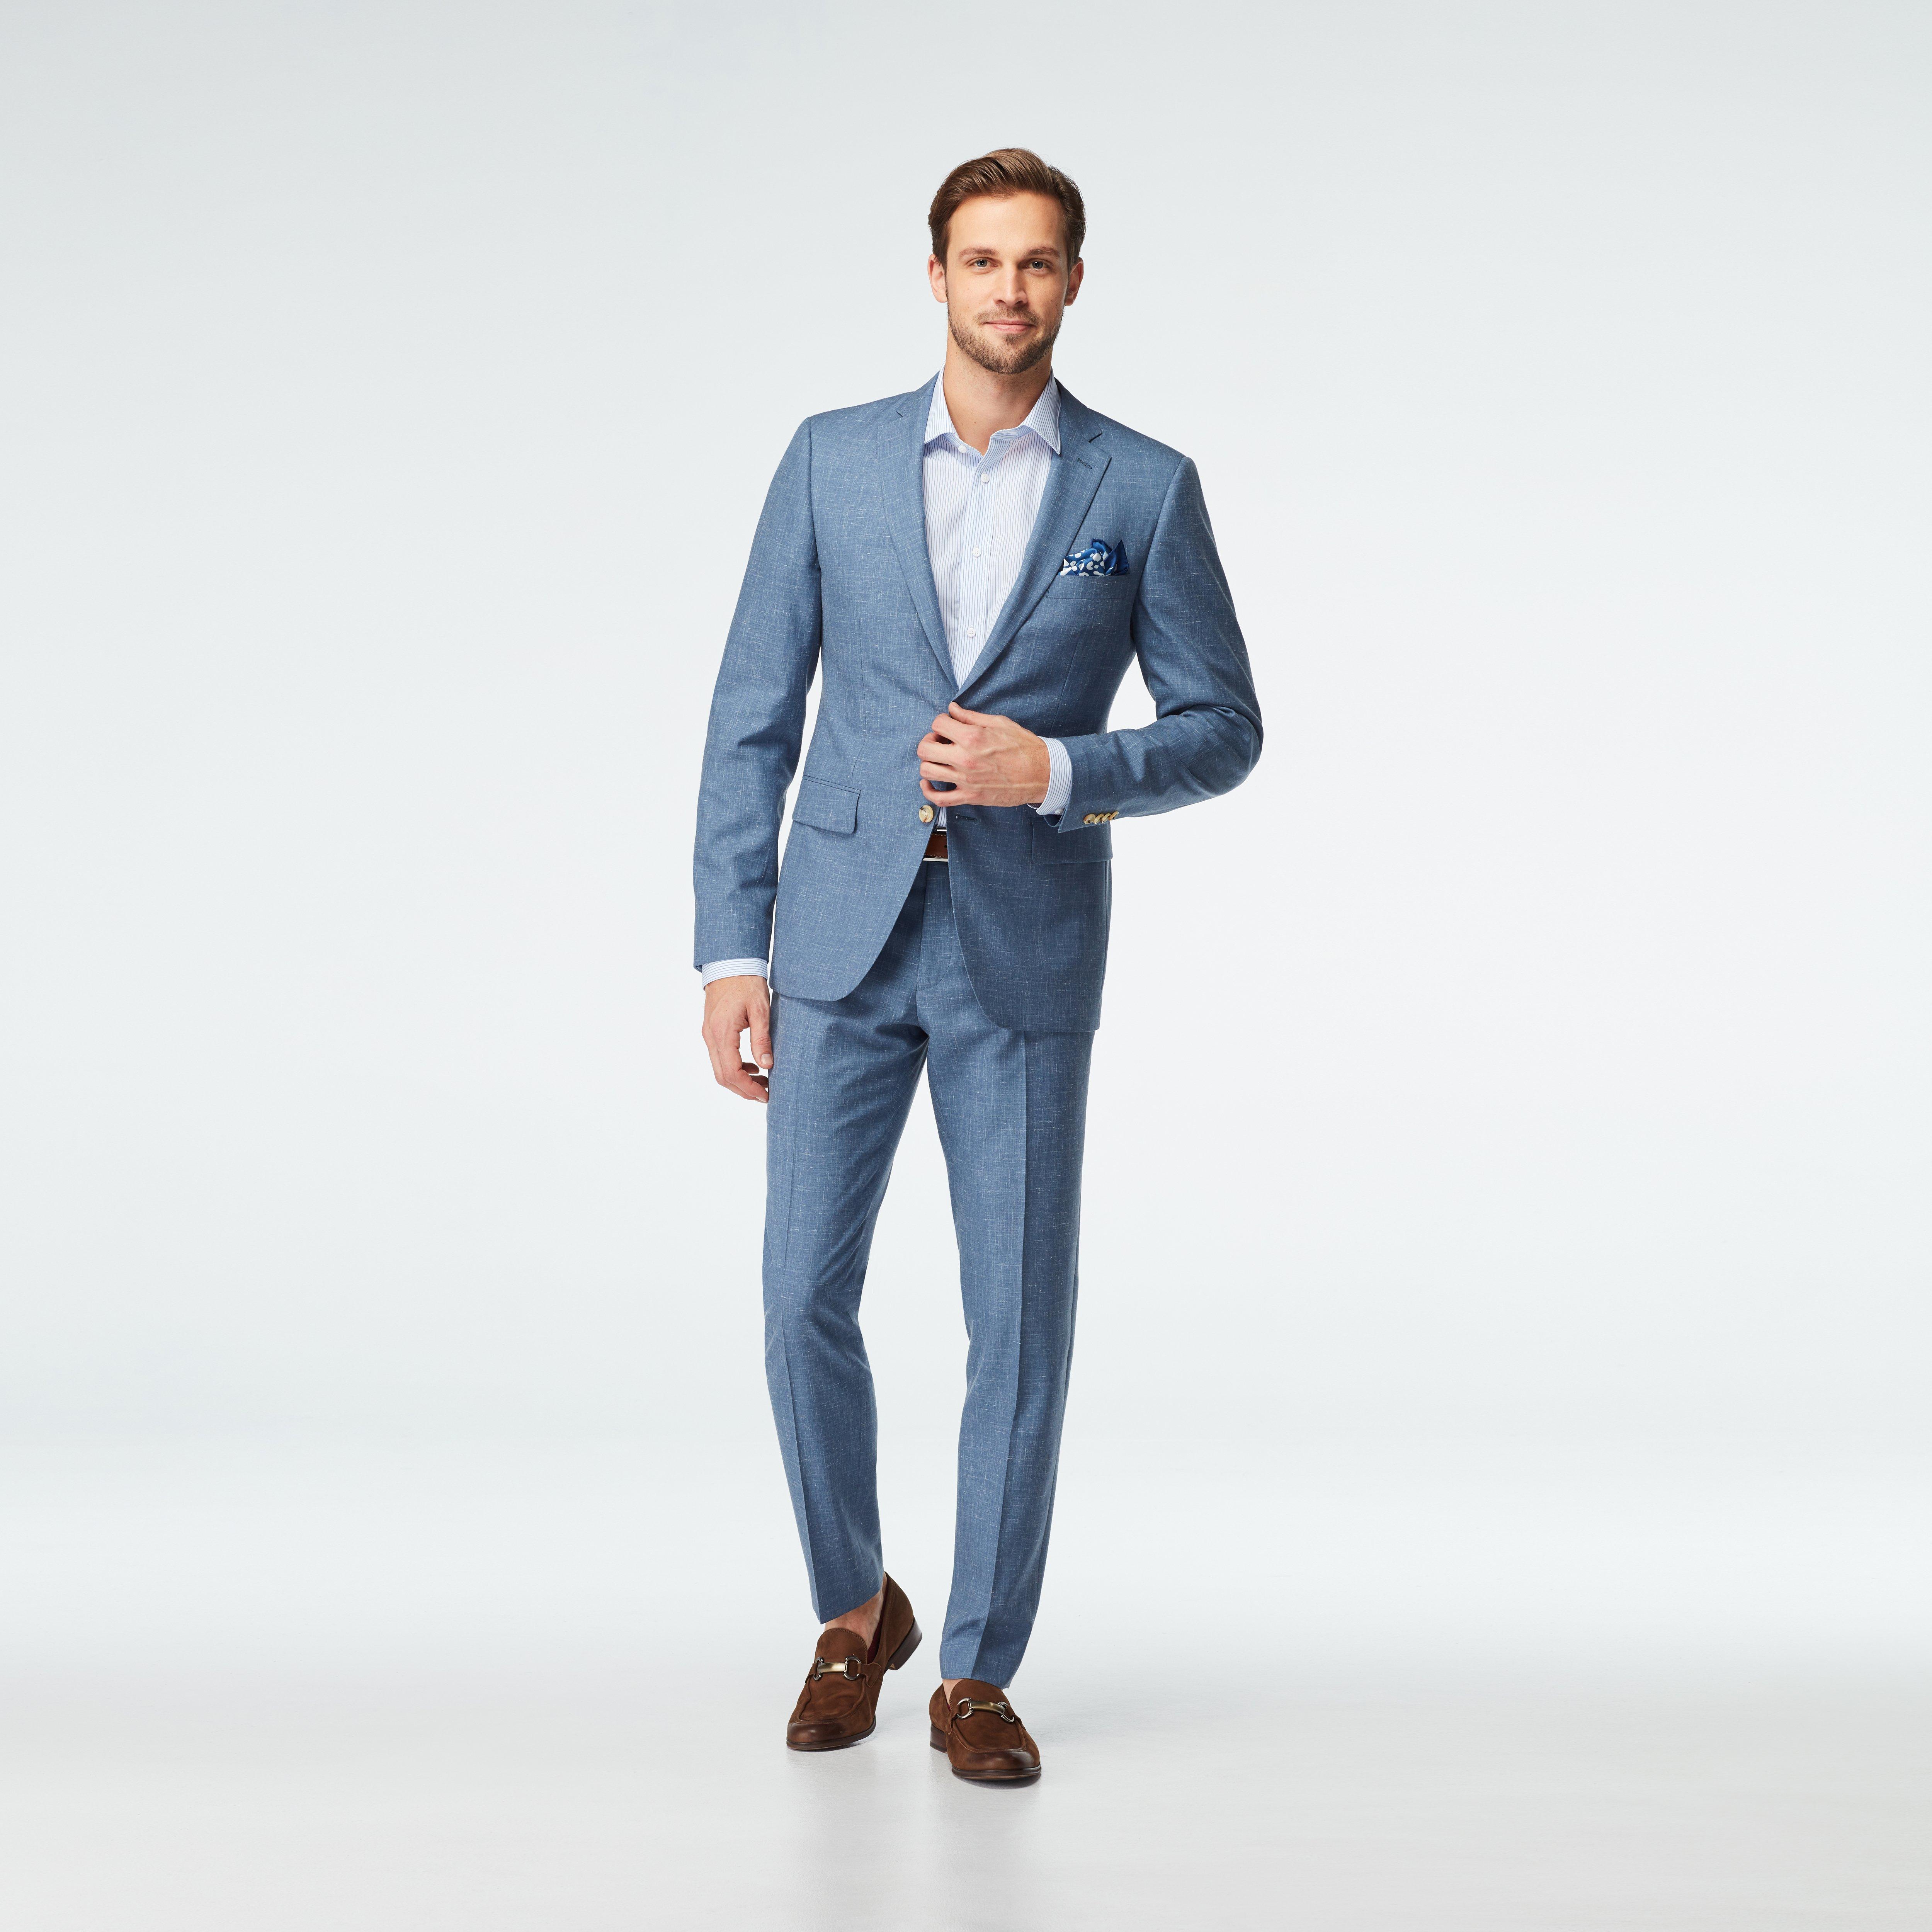 Sailsbury Linen Blue Suit